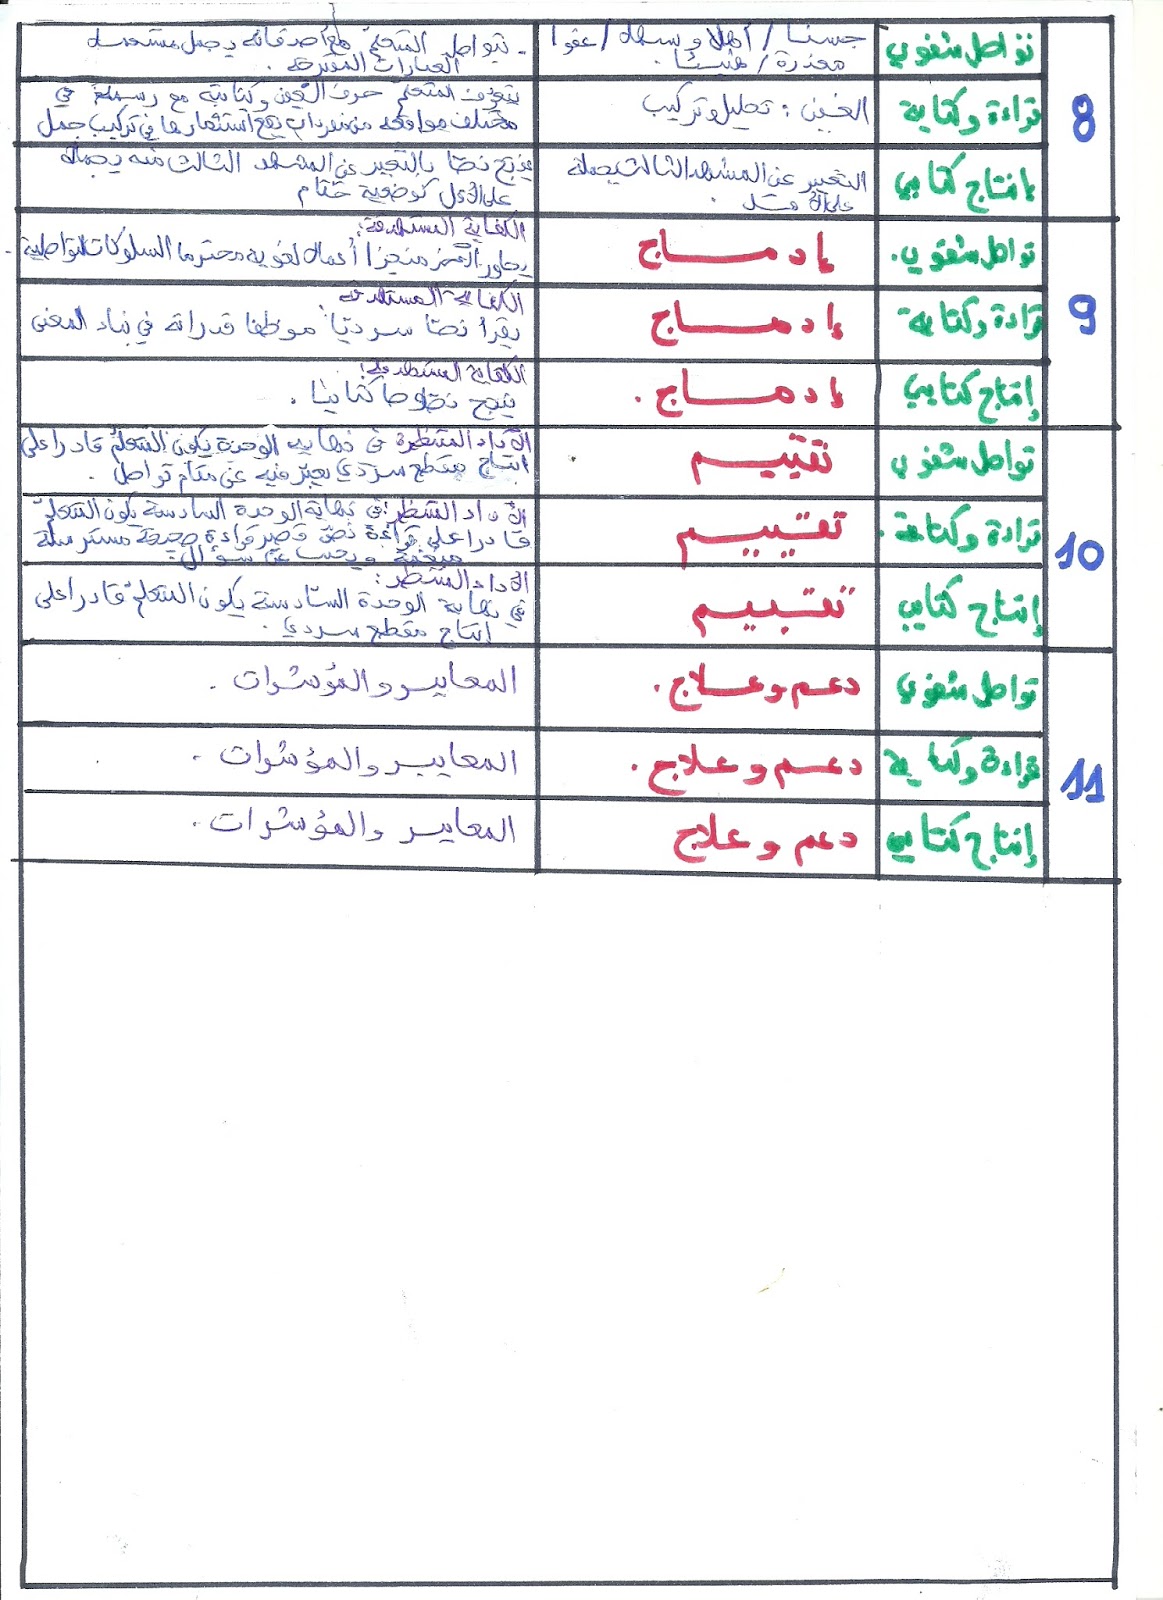 مخطط الوحدة السادسة لغة عربية سنة أولى